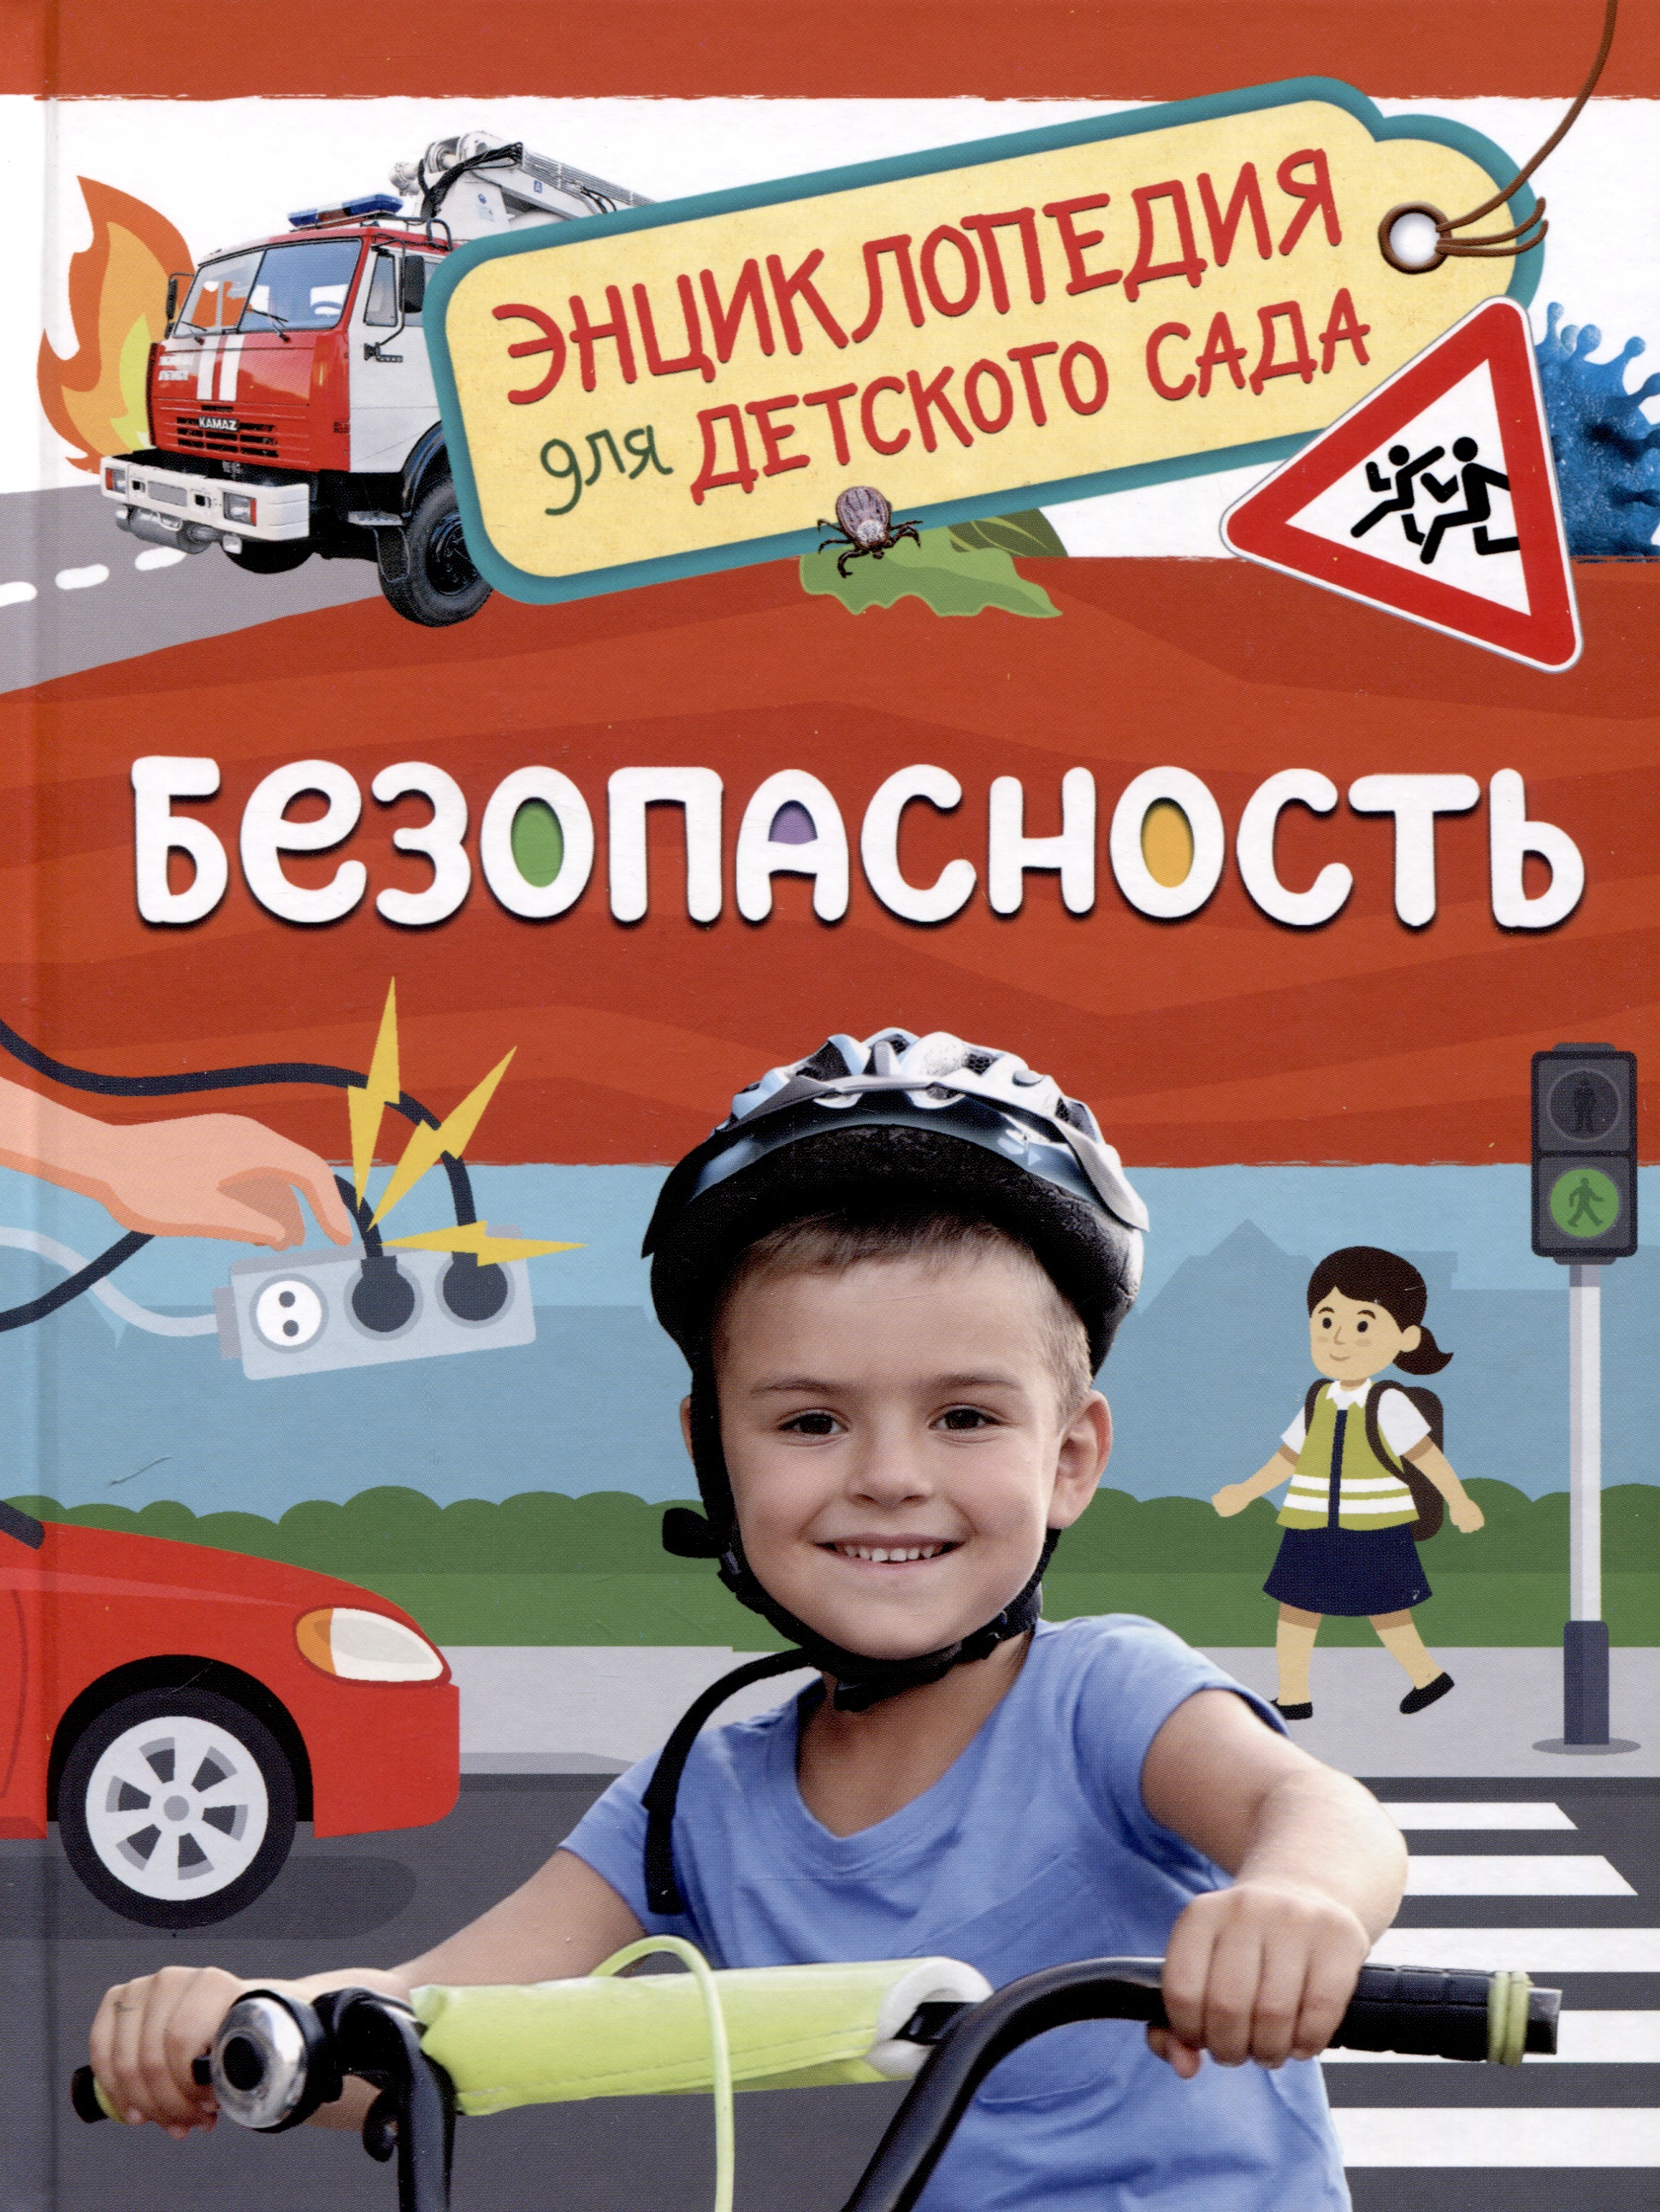 Безопасность (Энциклопедия для детского сада) энциклопедия для детского сада транспорт